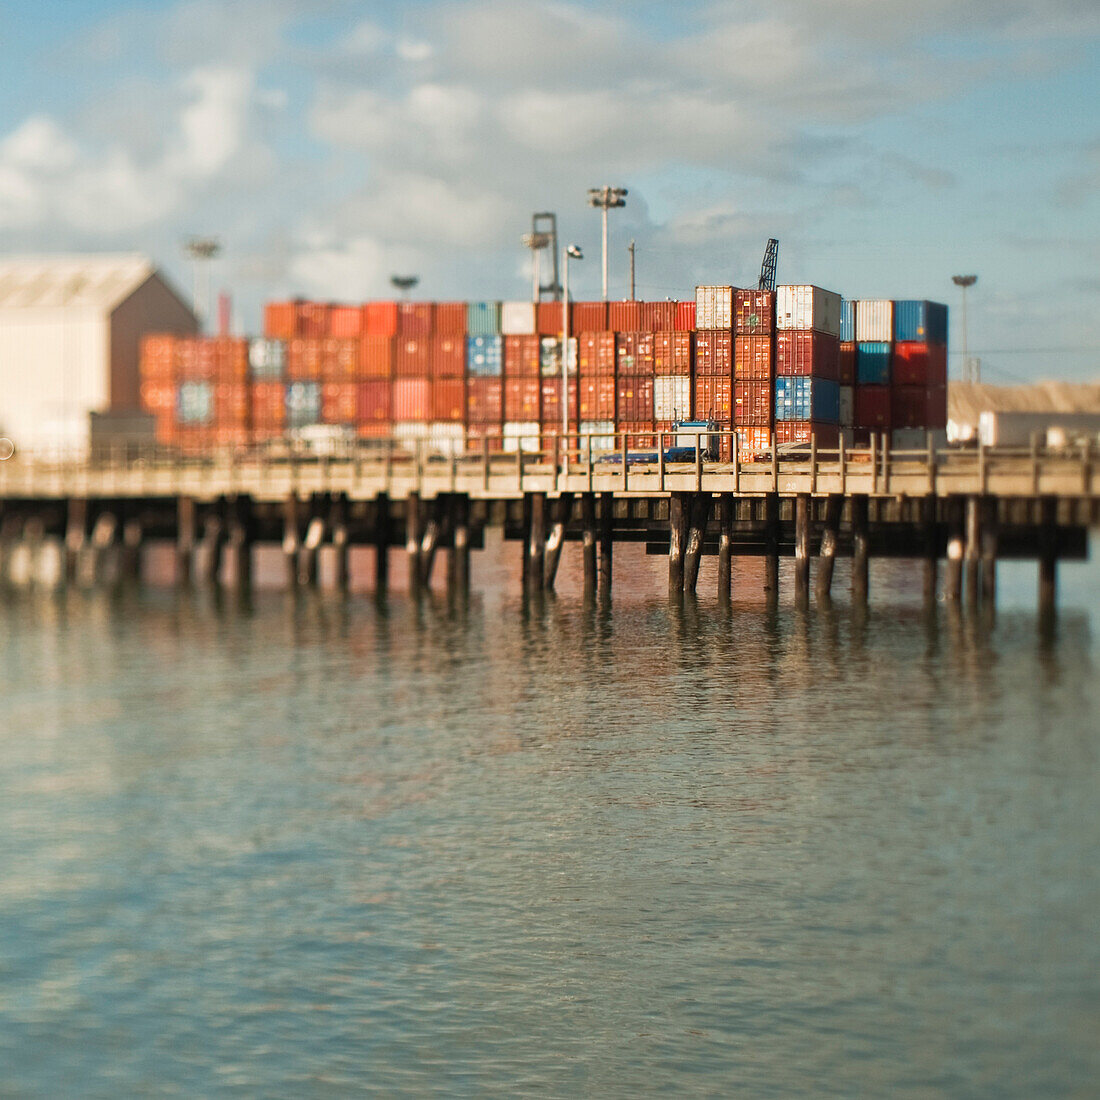 Cargo Shipping Containers on a Dock, San Francisco, California, USA